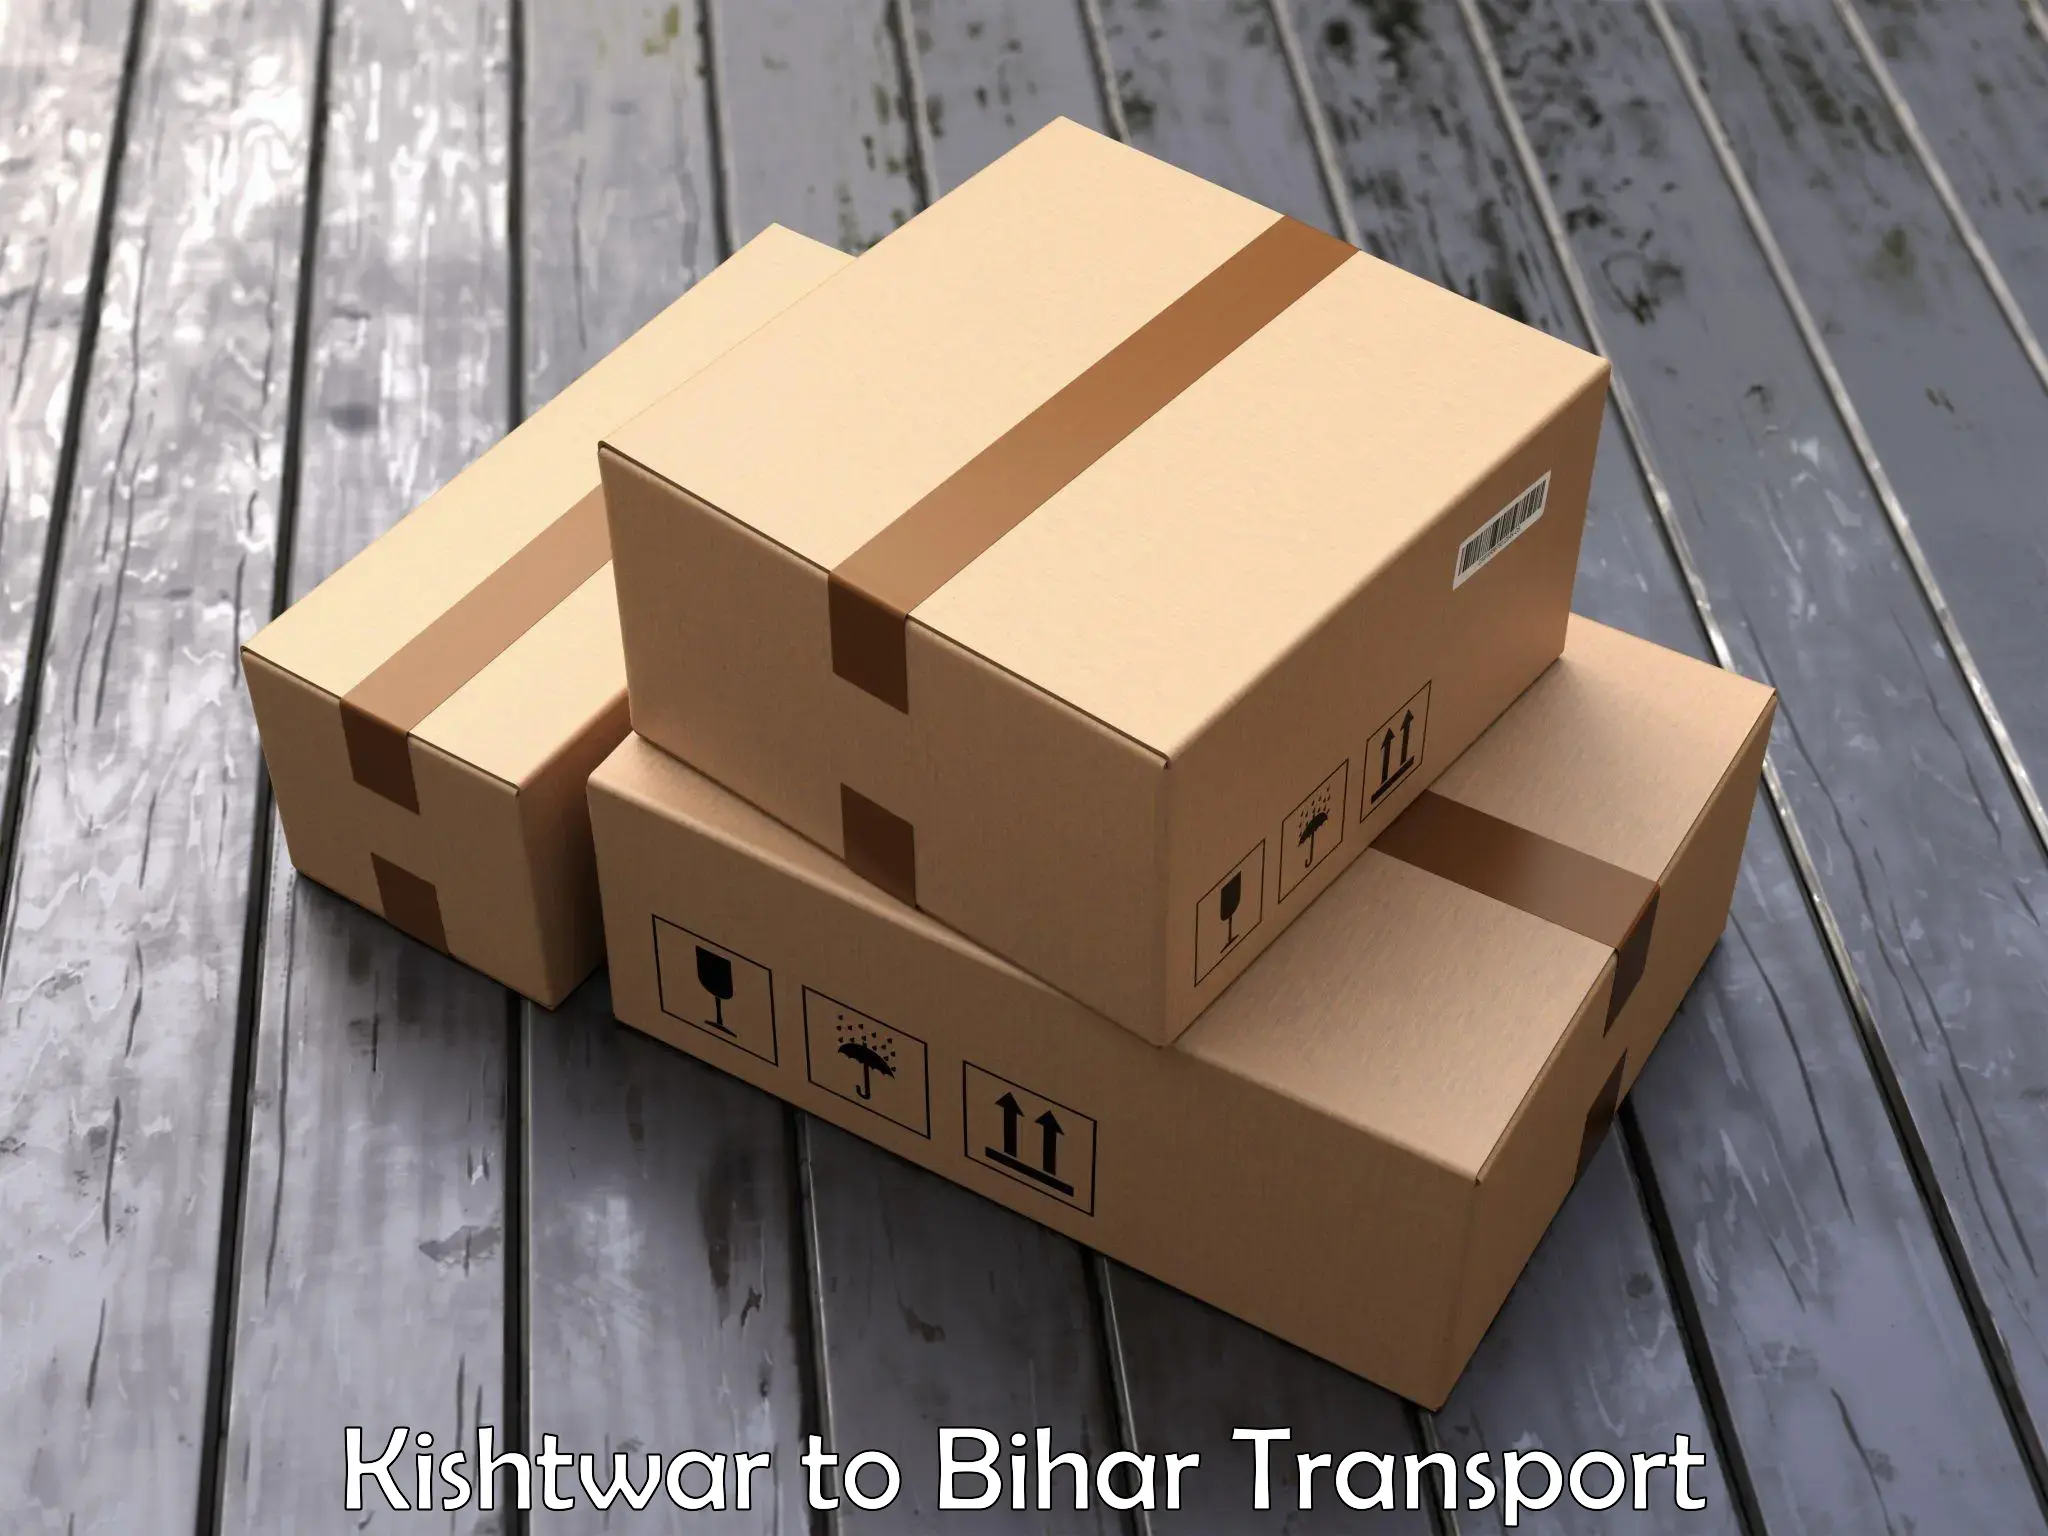 Cargo transportation services Kishtwar to Madhepura